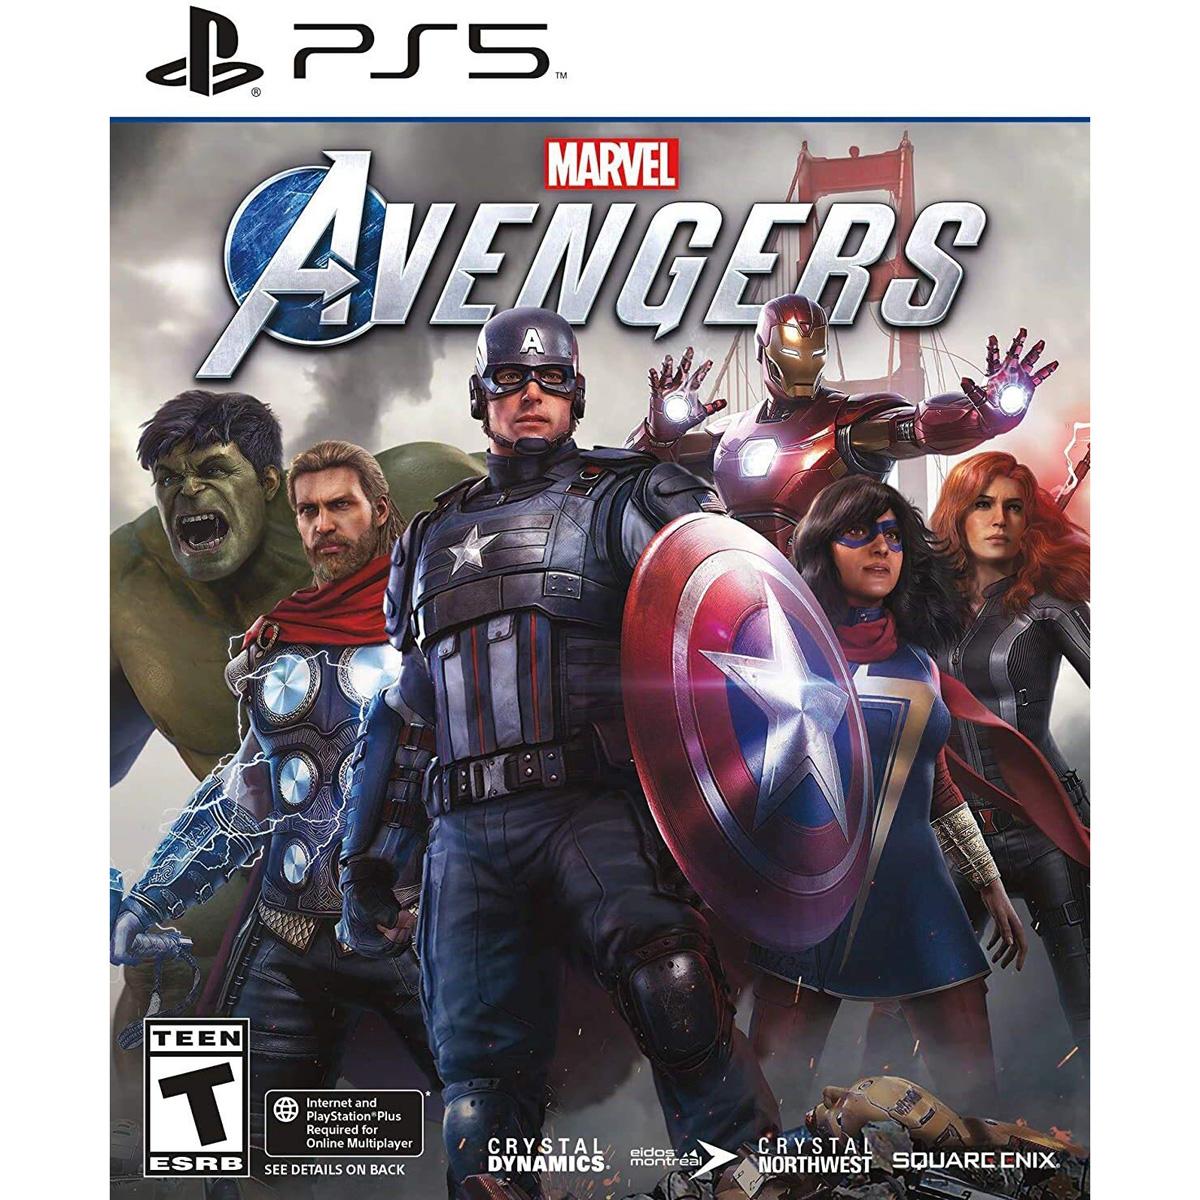 Marvels Avengers PS5 for $19.99